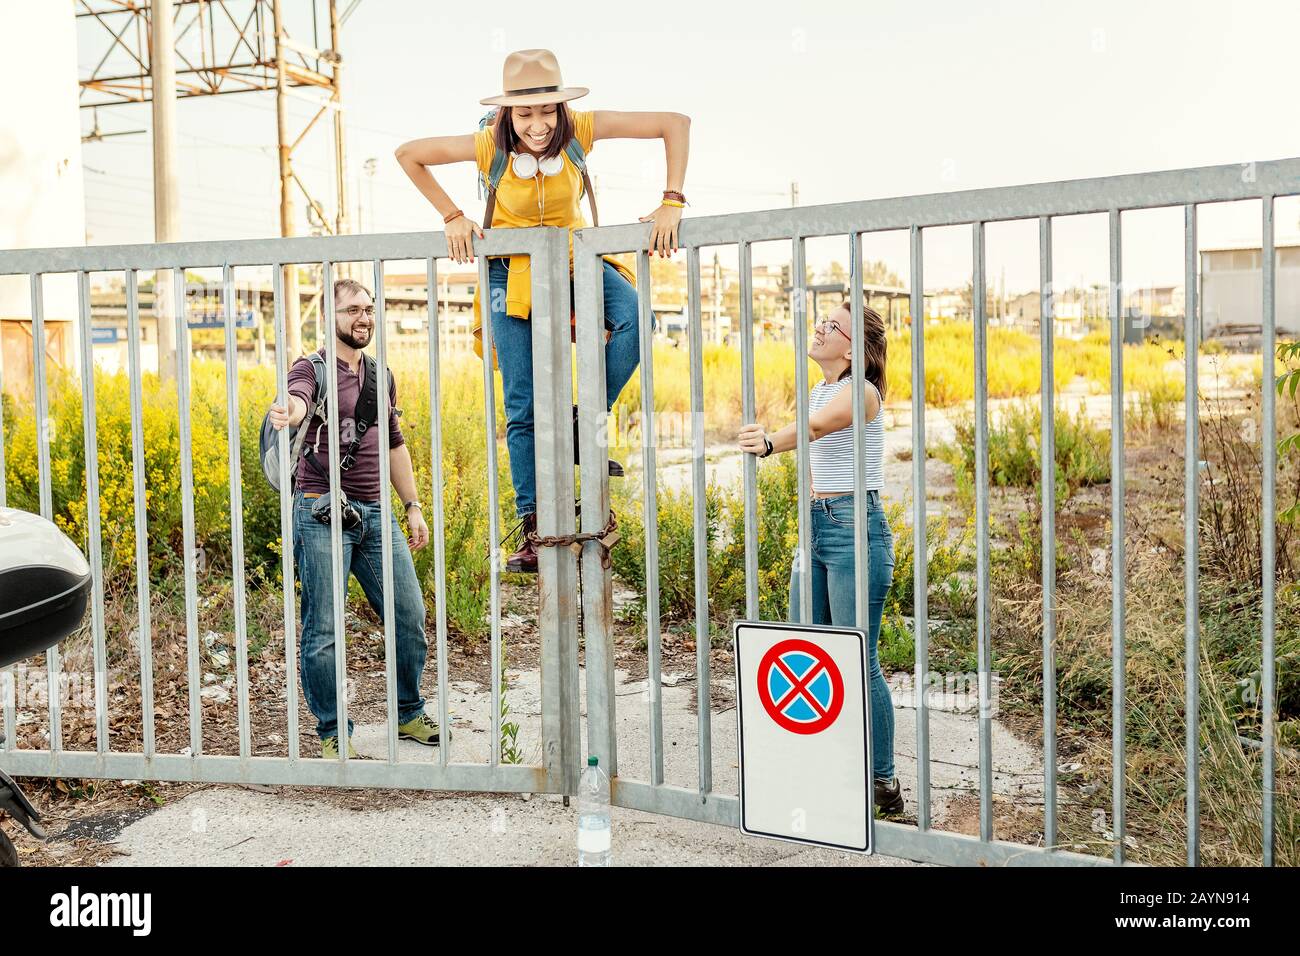 Eine Gruppe von Freunden, die Spaß haben und über Zaun klettern, brechen das Regelkonzept Stockfoto